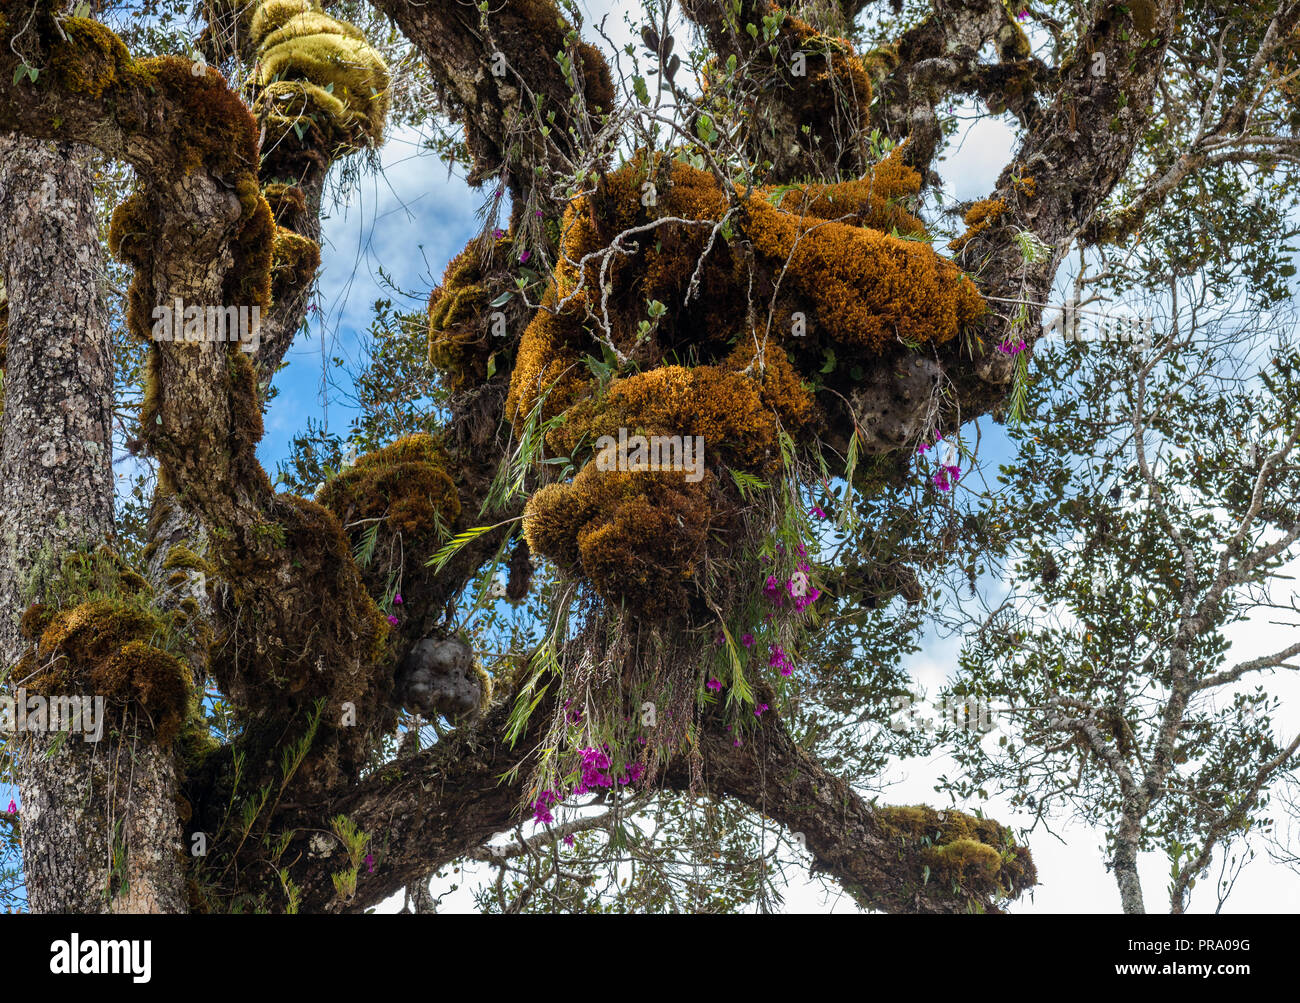 Un albero gigante caricato con colorati moss, orchidee e altre piante nella foresta nuvolosa della gamma centrale. Wamena, Papua, Indonesia. Foto Stock